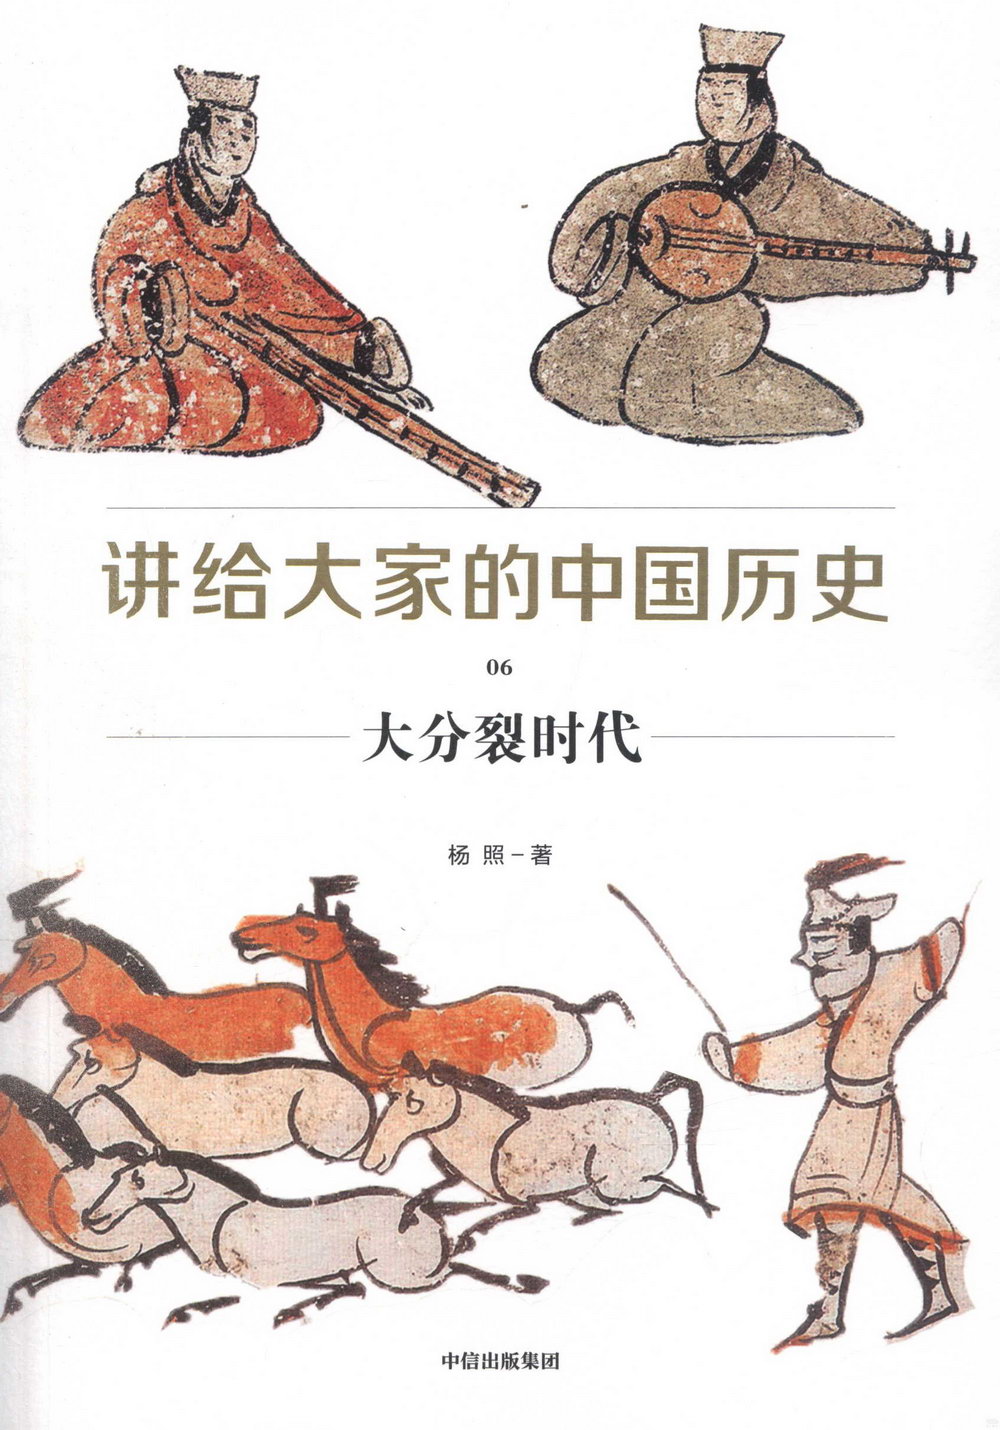 講給大家的中國歷史(6)：大分裂時代